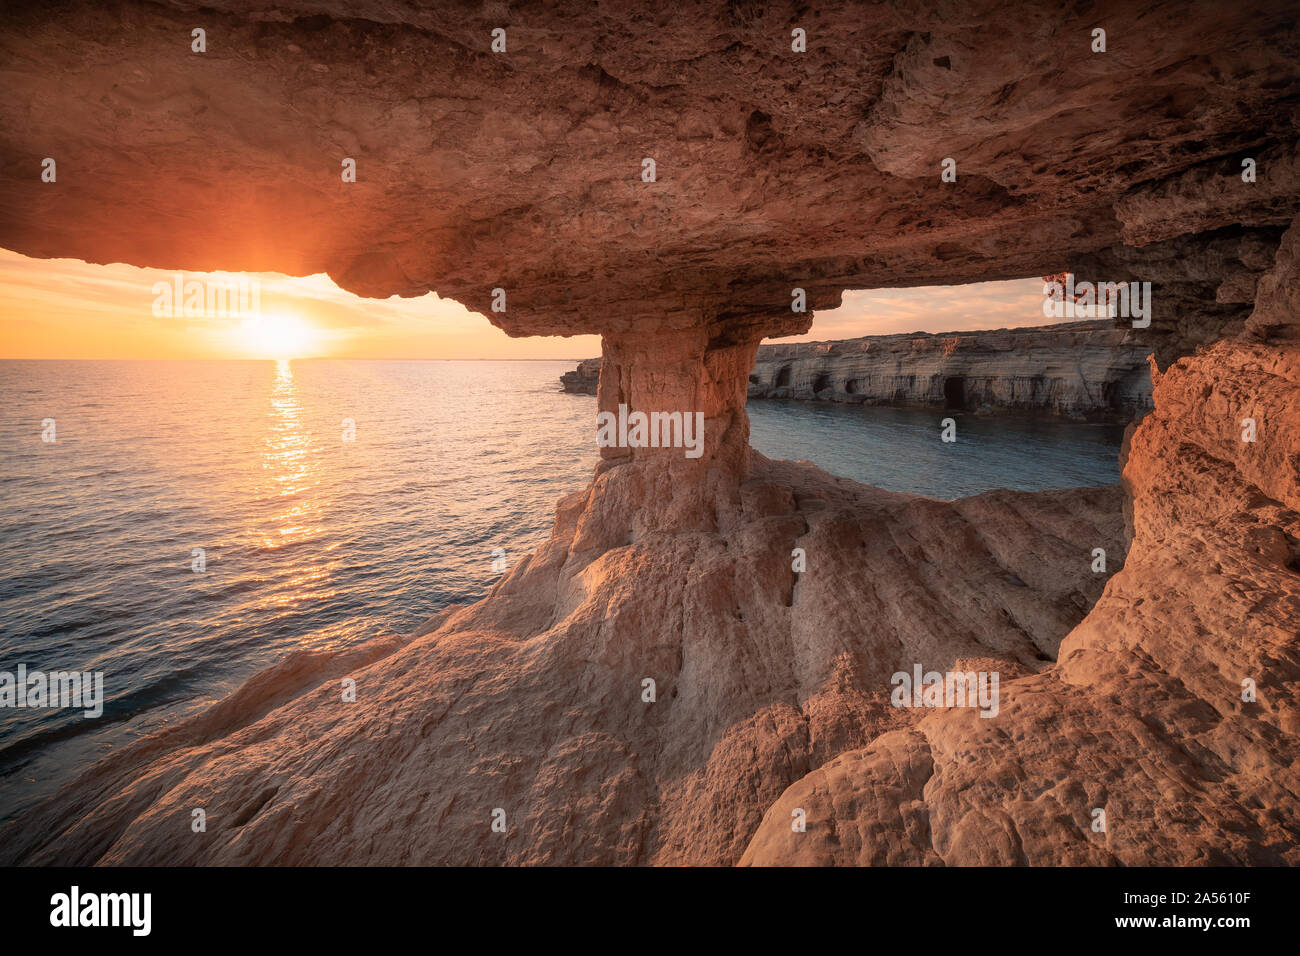 Meereshöhlen in Kap Greko National Park in der Nähe von Ayia Napa und Protaras auf Zypern Insel, Mittelmeer Stockfoto